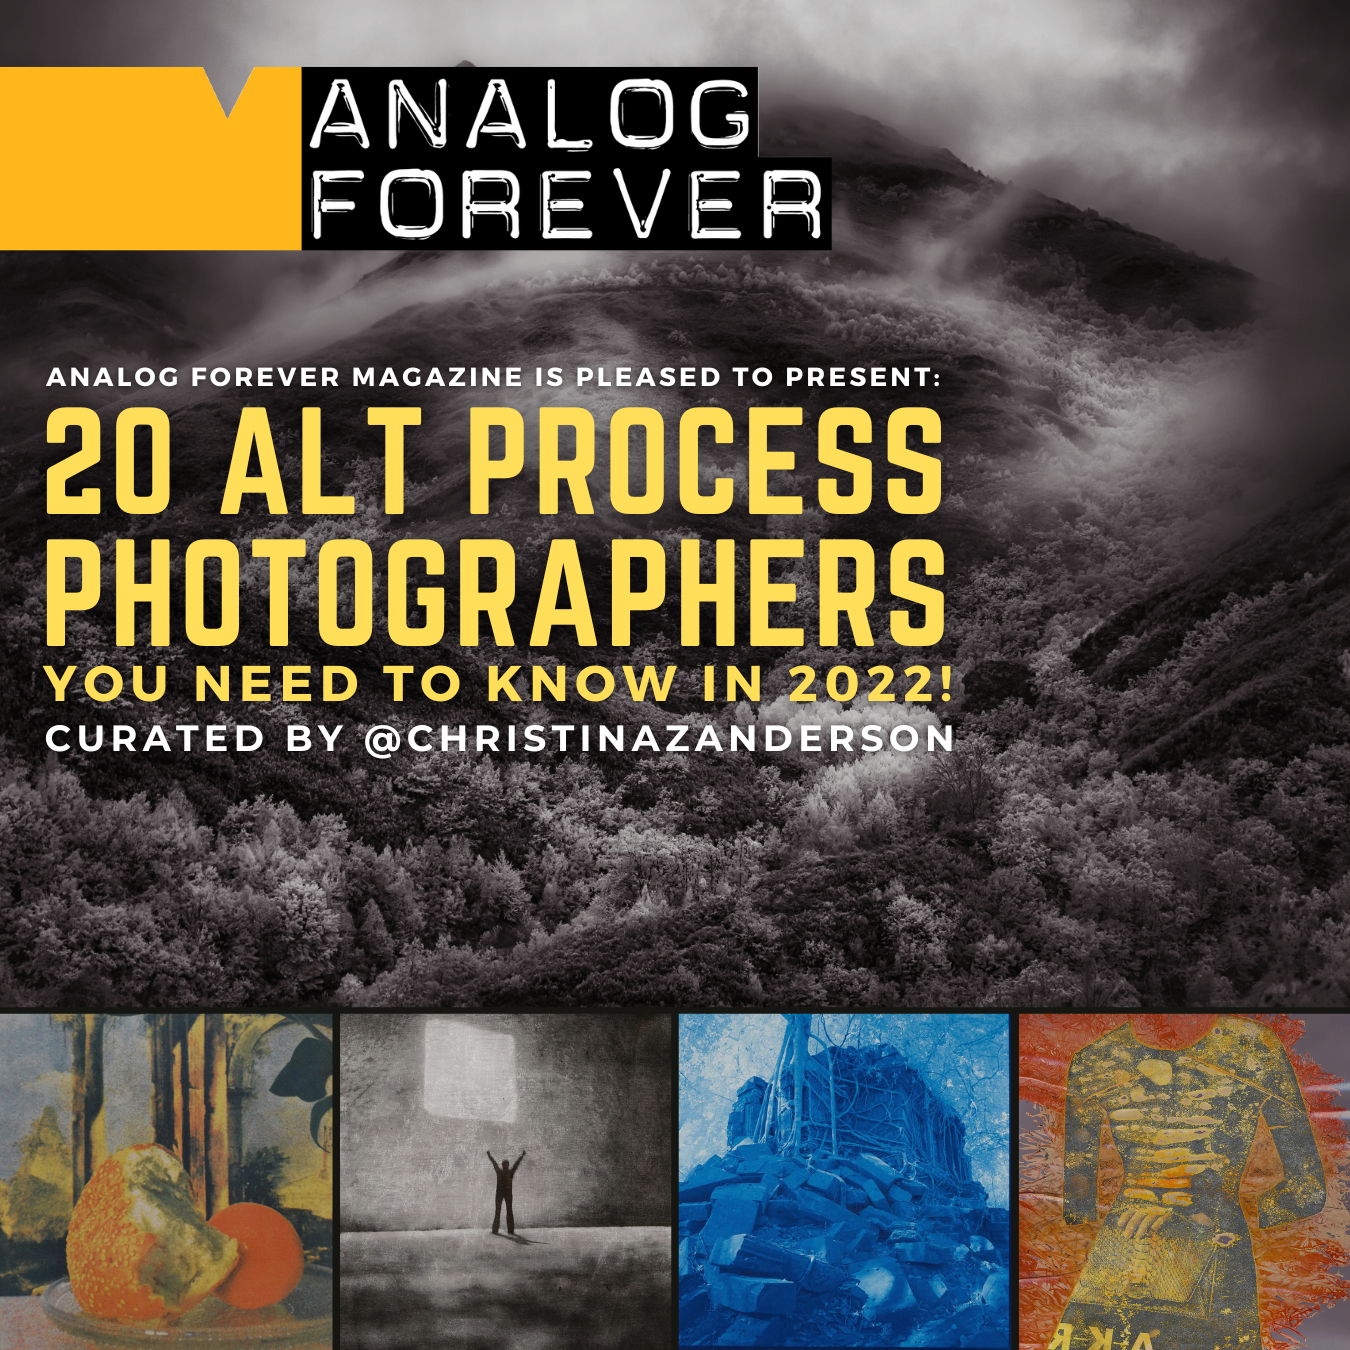 Twenty Alternative Process Photographers You Need to Know